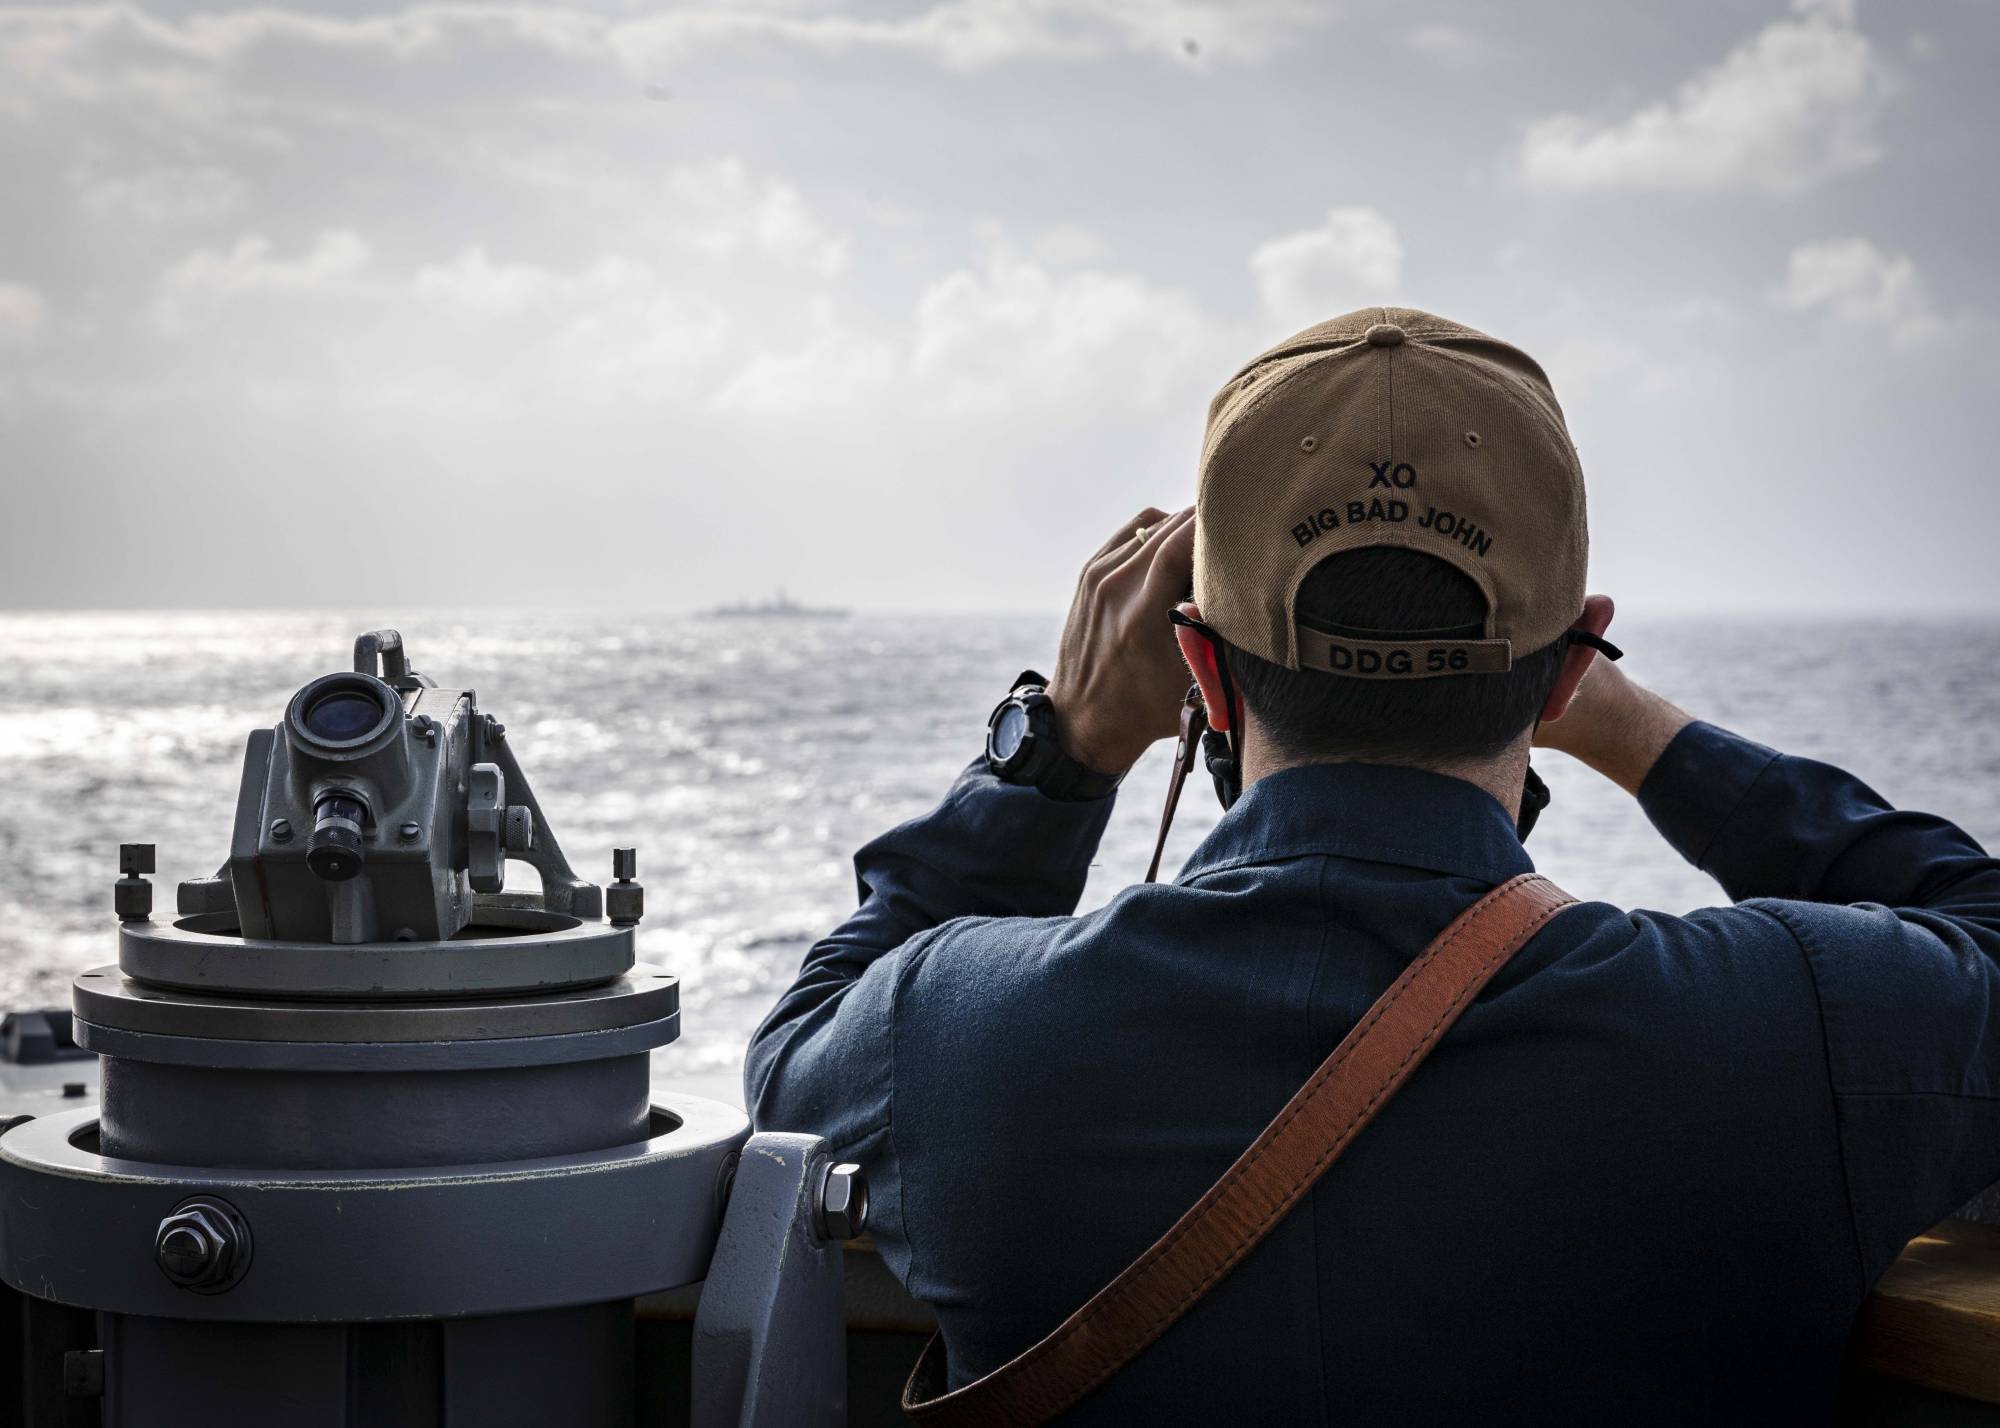 Sỹ quan trên tàu&nbsp;USS John S. McCain quan sát một tàu ở phía xa trong chuyến tuần tra tự do hàng hải ở Biển Đông ngày 5.2.